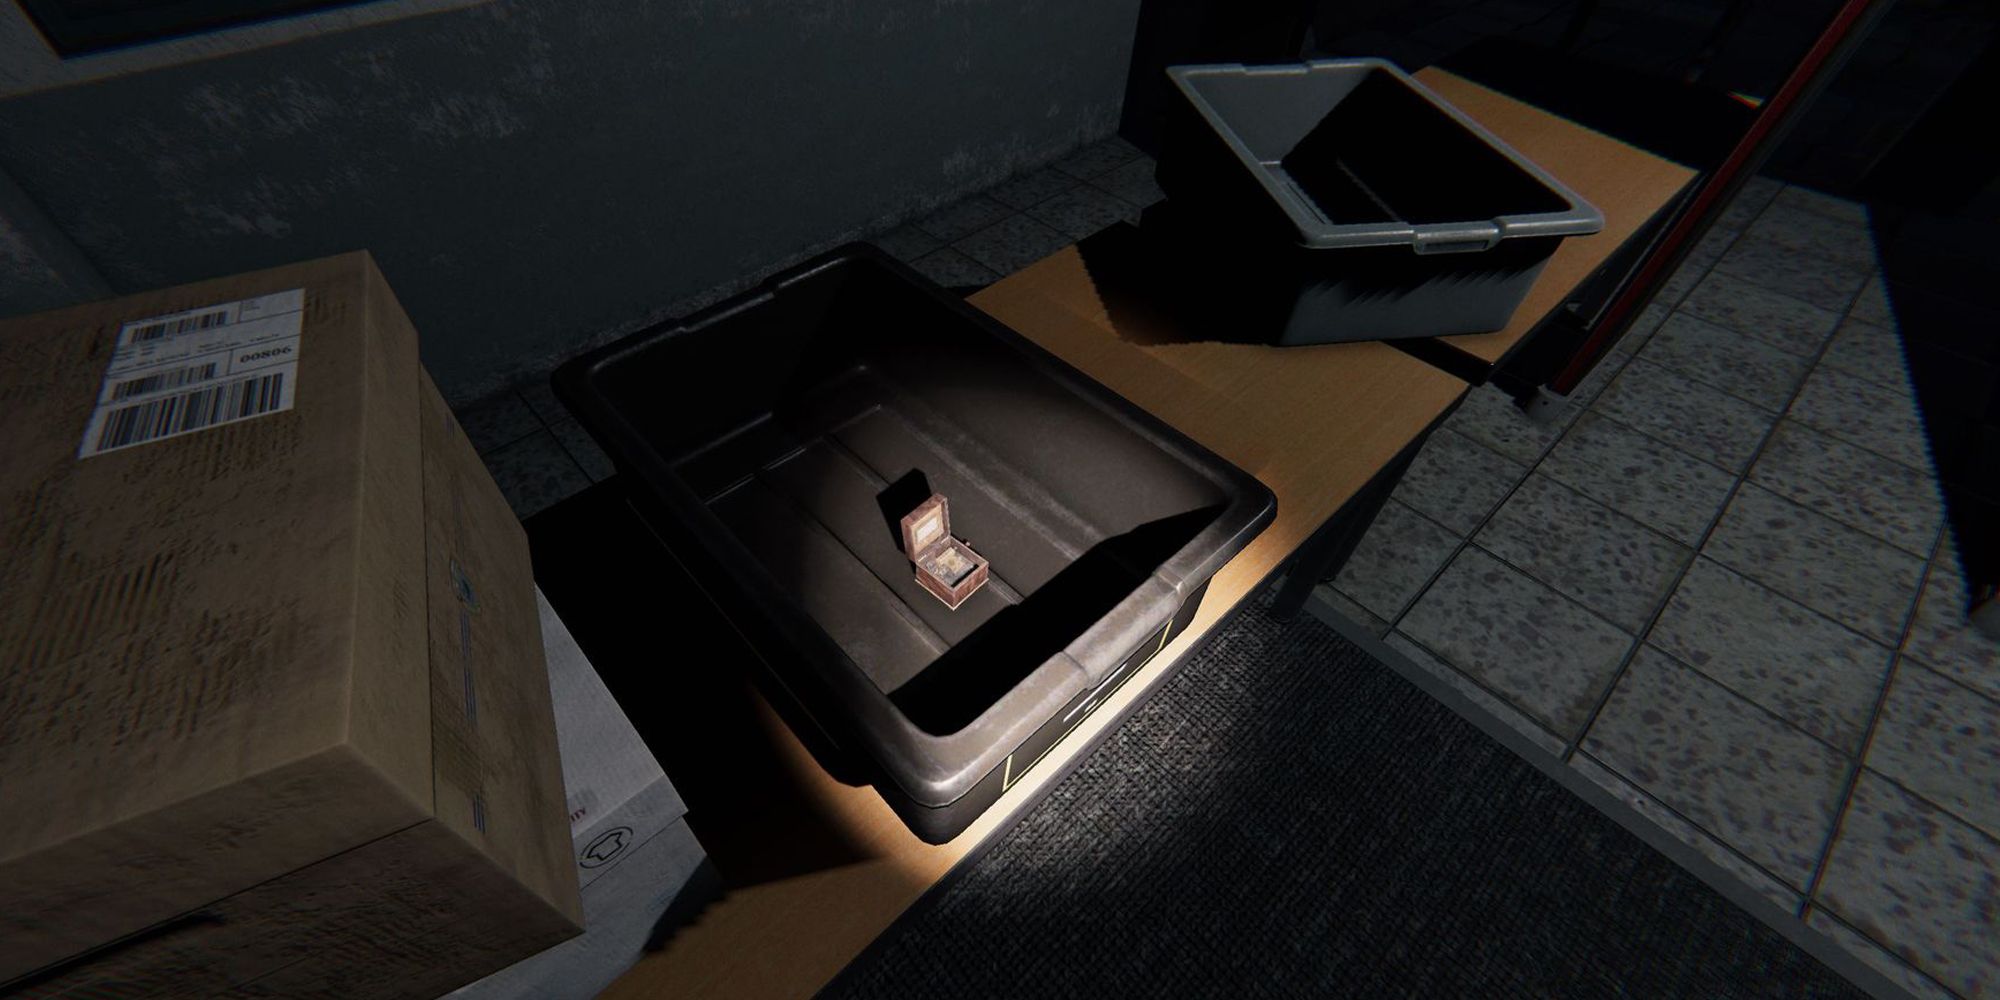 图片展示了Phasmophobia中监狱的桌子上放着一个灰色塑料盒子，里面有一个音乐盒。